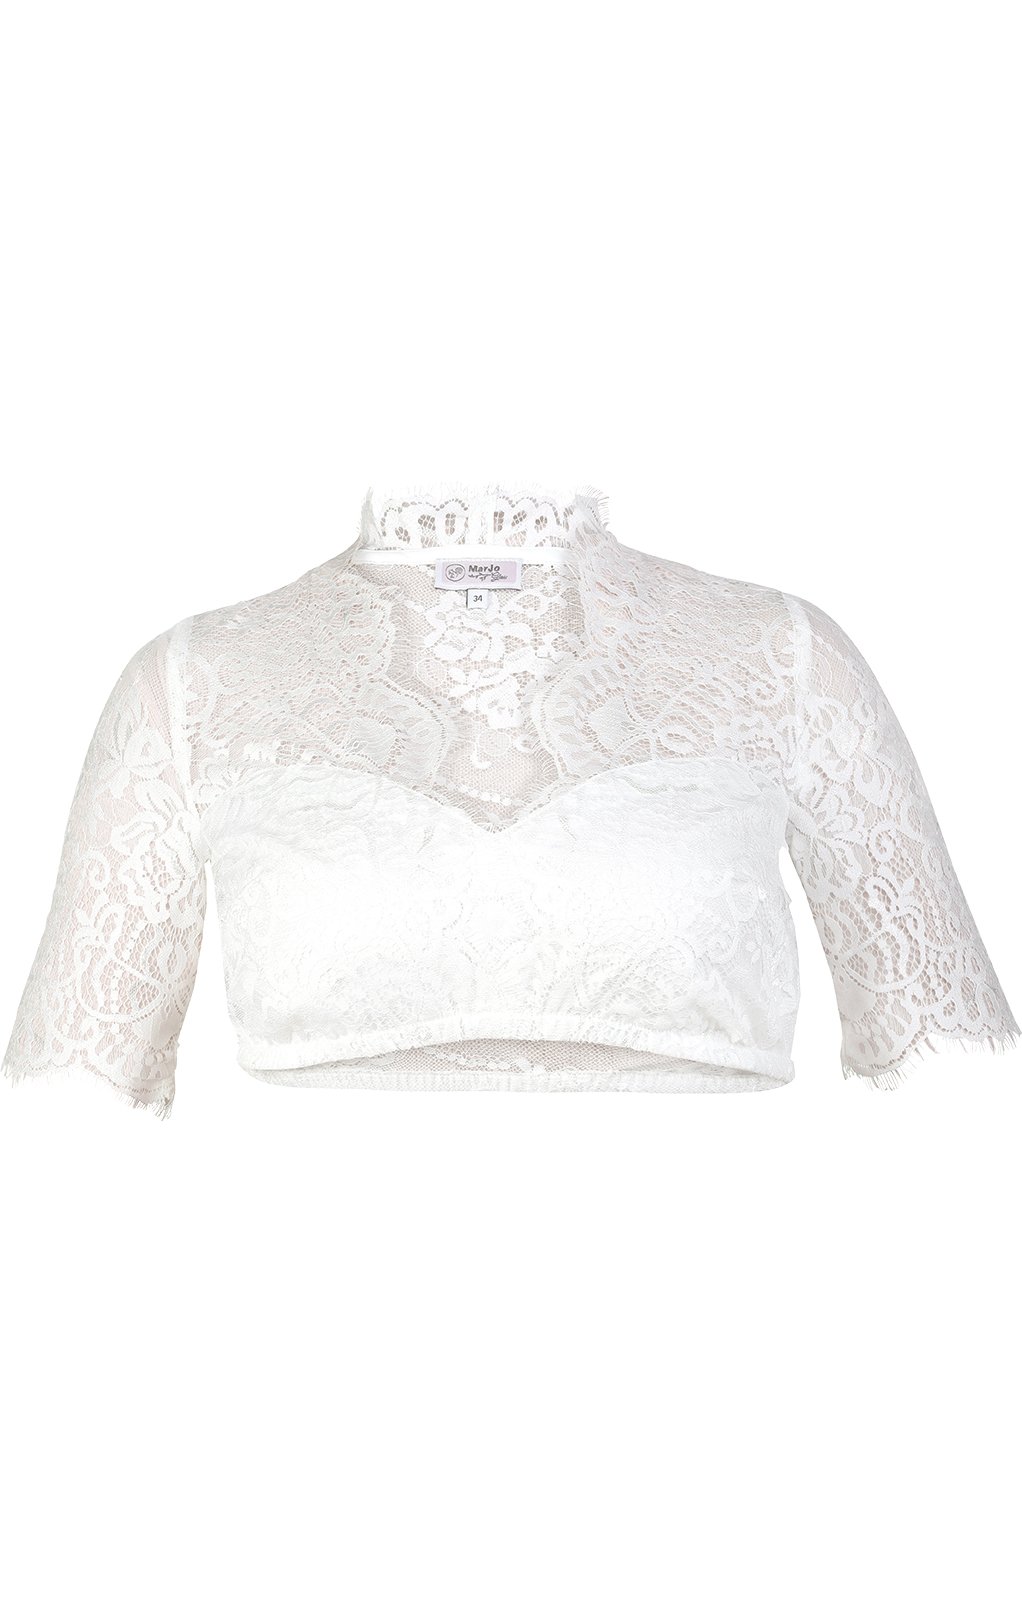 weitere Bilder von Traditional dirndl blouse MALINA-ELVIRA offwhite